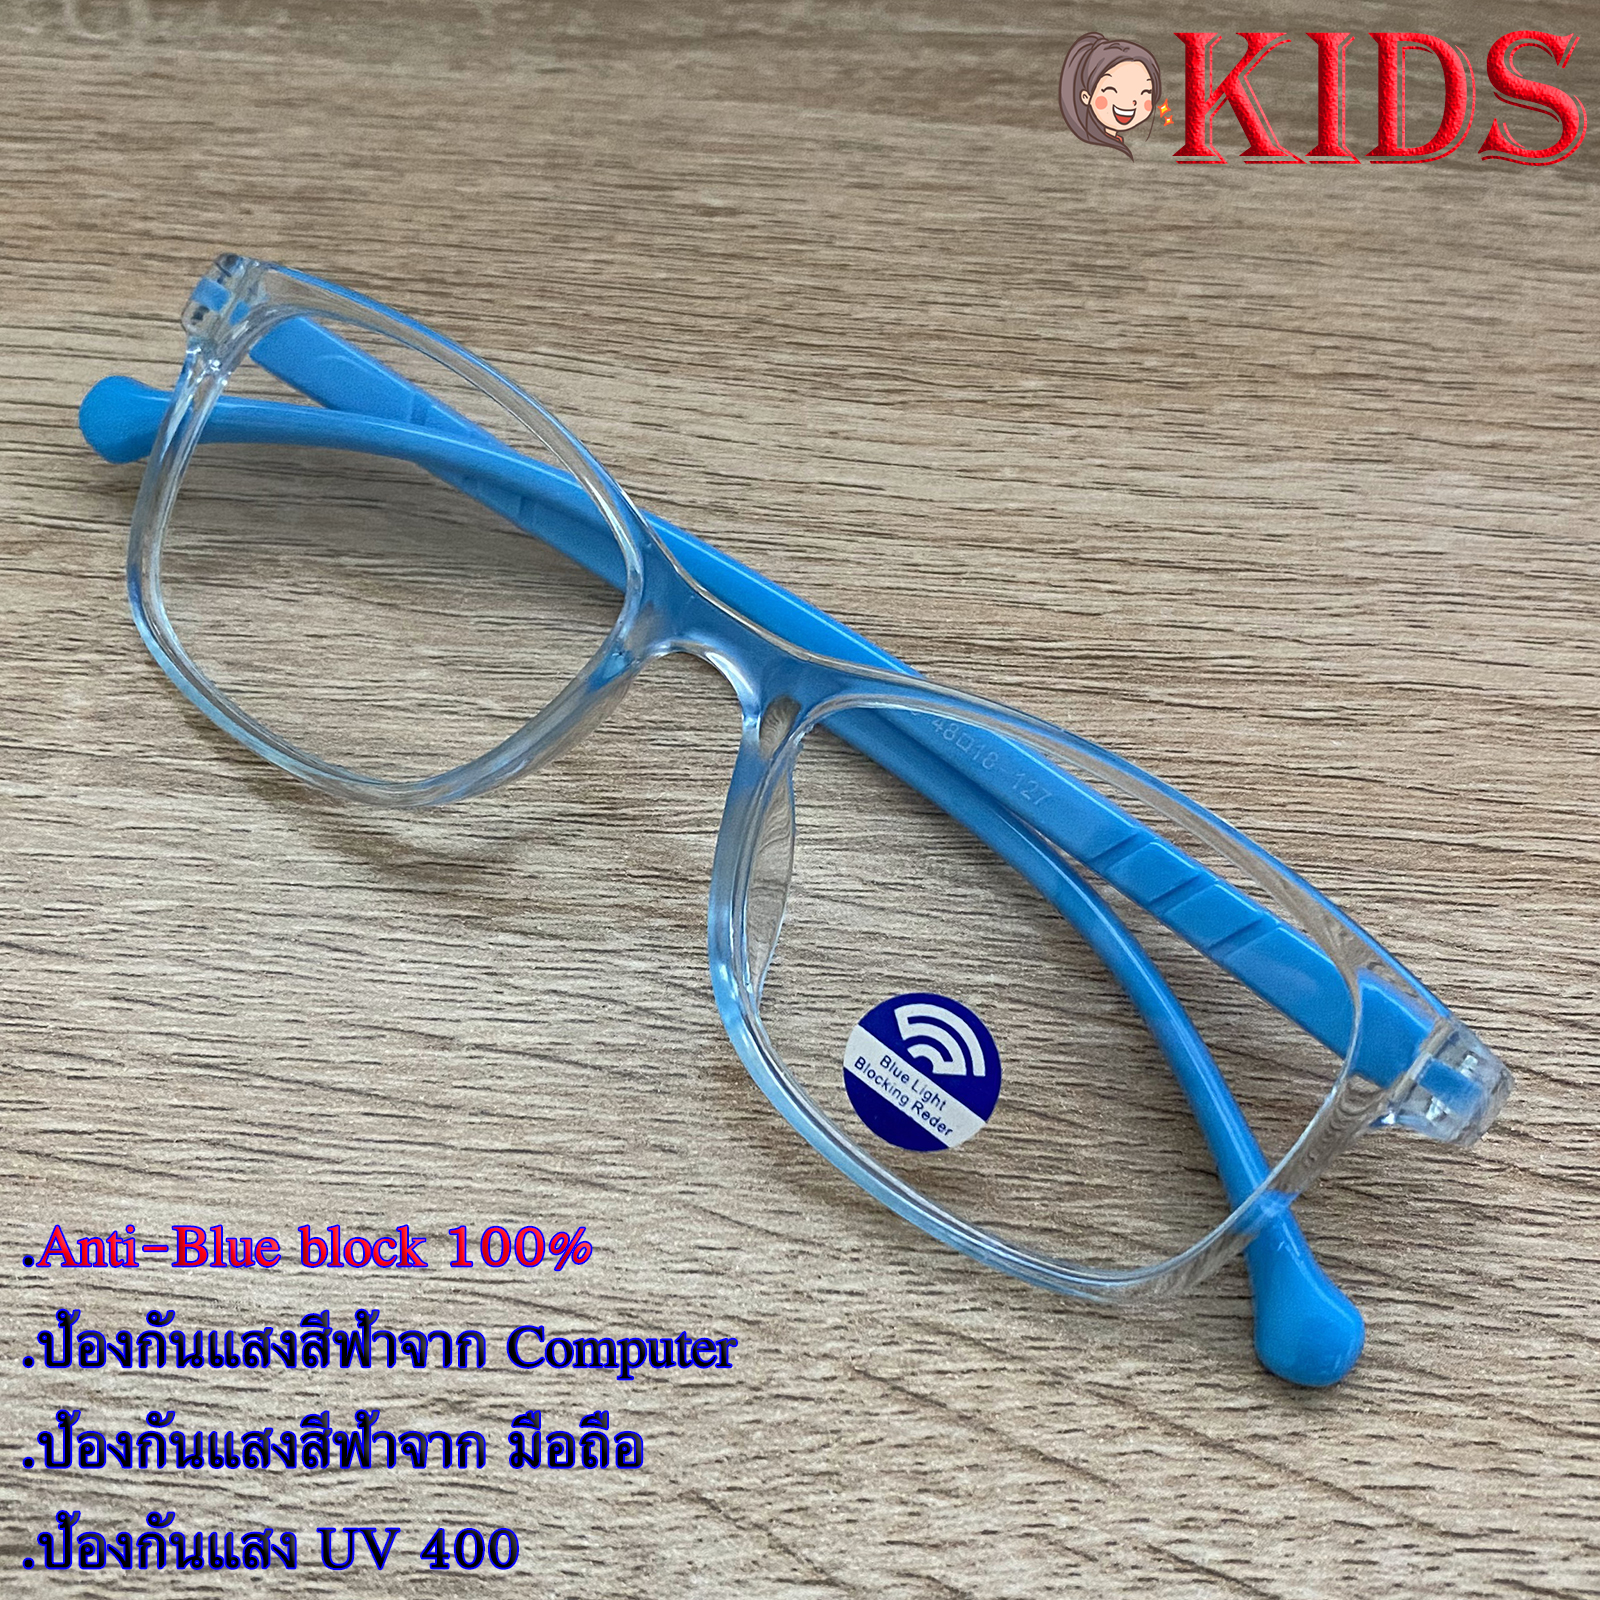 Blue Block แว่นตาเด็ก กรองแสงสีฟ้า กรองแสงคอม รุ่น 1006 สีฟ้ากรอบใส พลาสติก พีซี เกรด เอ ขาข้อต่อ กรองแสงสูงสุด95% กัน UV 100% Glasses